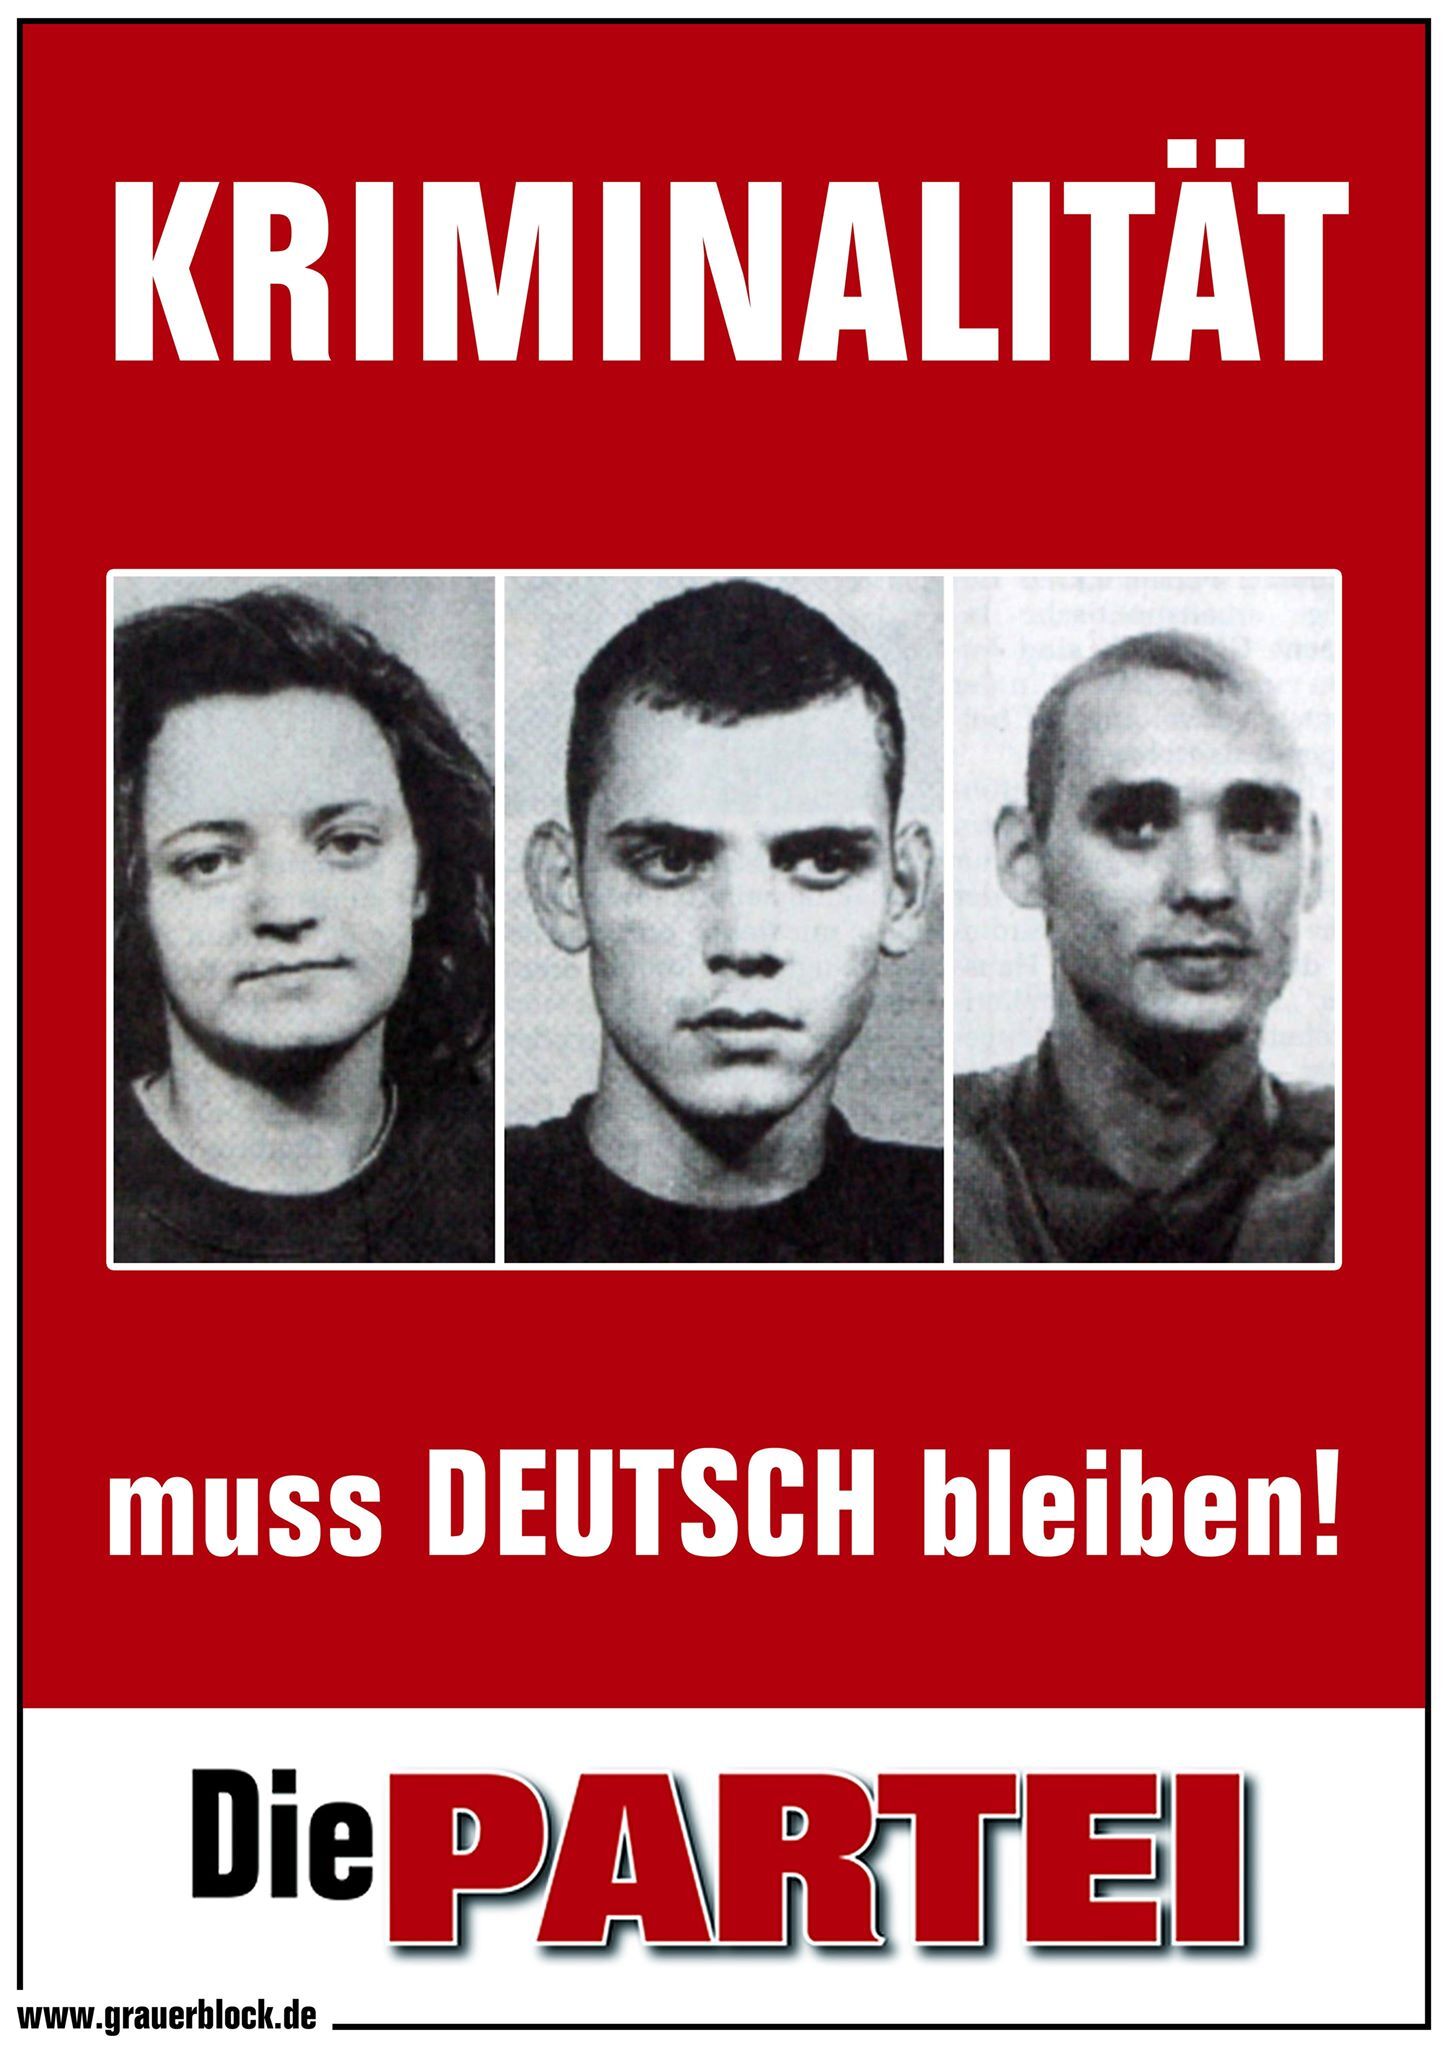 Kundgebung: Kriminalität muss deutsch bleiben!